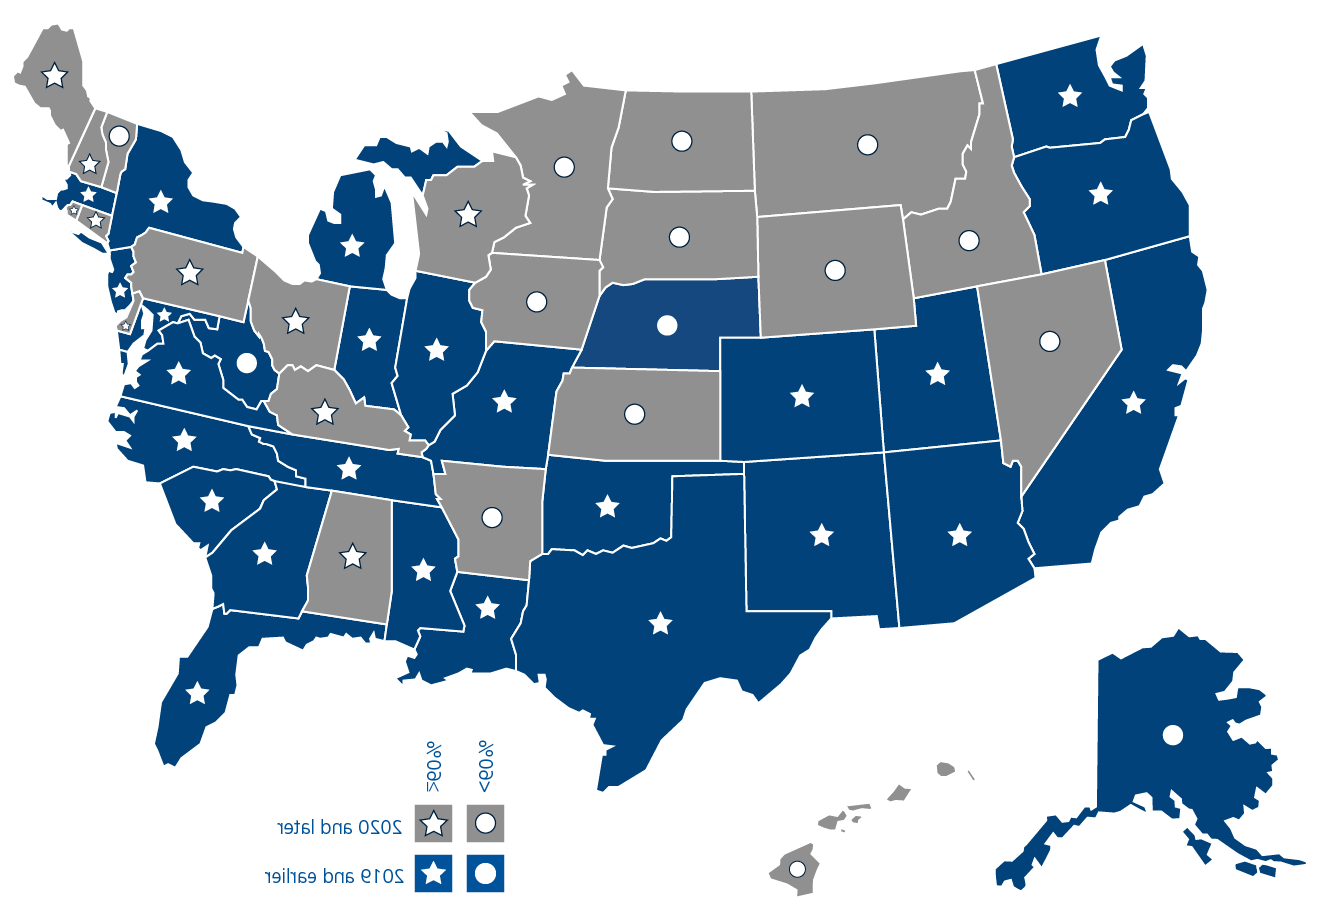 这是一张美国大陆的地图.S., 夏威夷, 以及阿拉斯加，显示了指定为分娩友好的州的医院比例与该州是否参与全国孕产妇保健倡议之间的关系. 请参阅图片下方的链接获取图片说明.